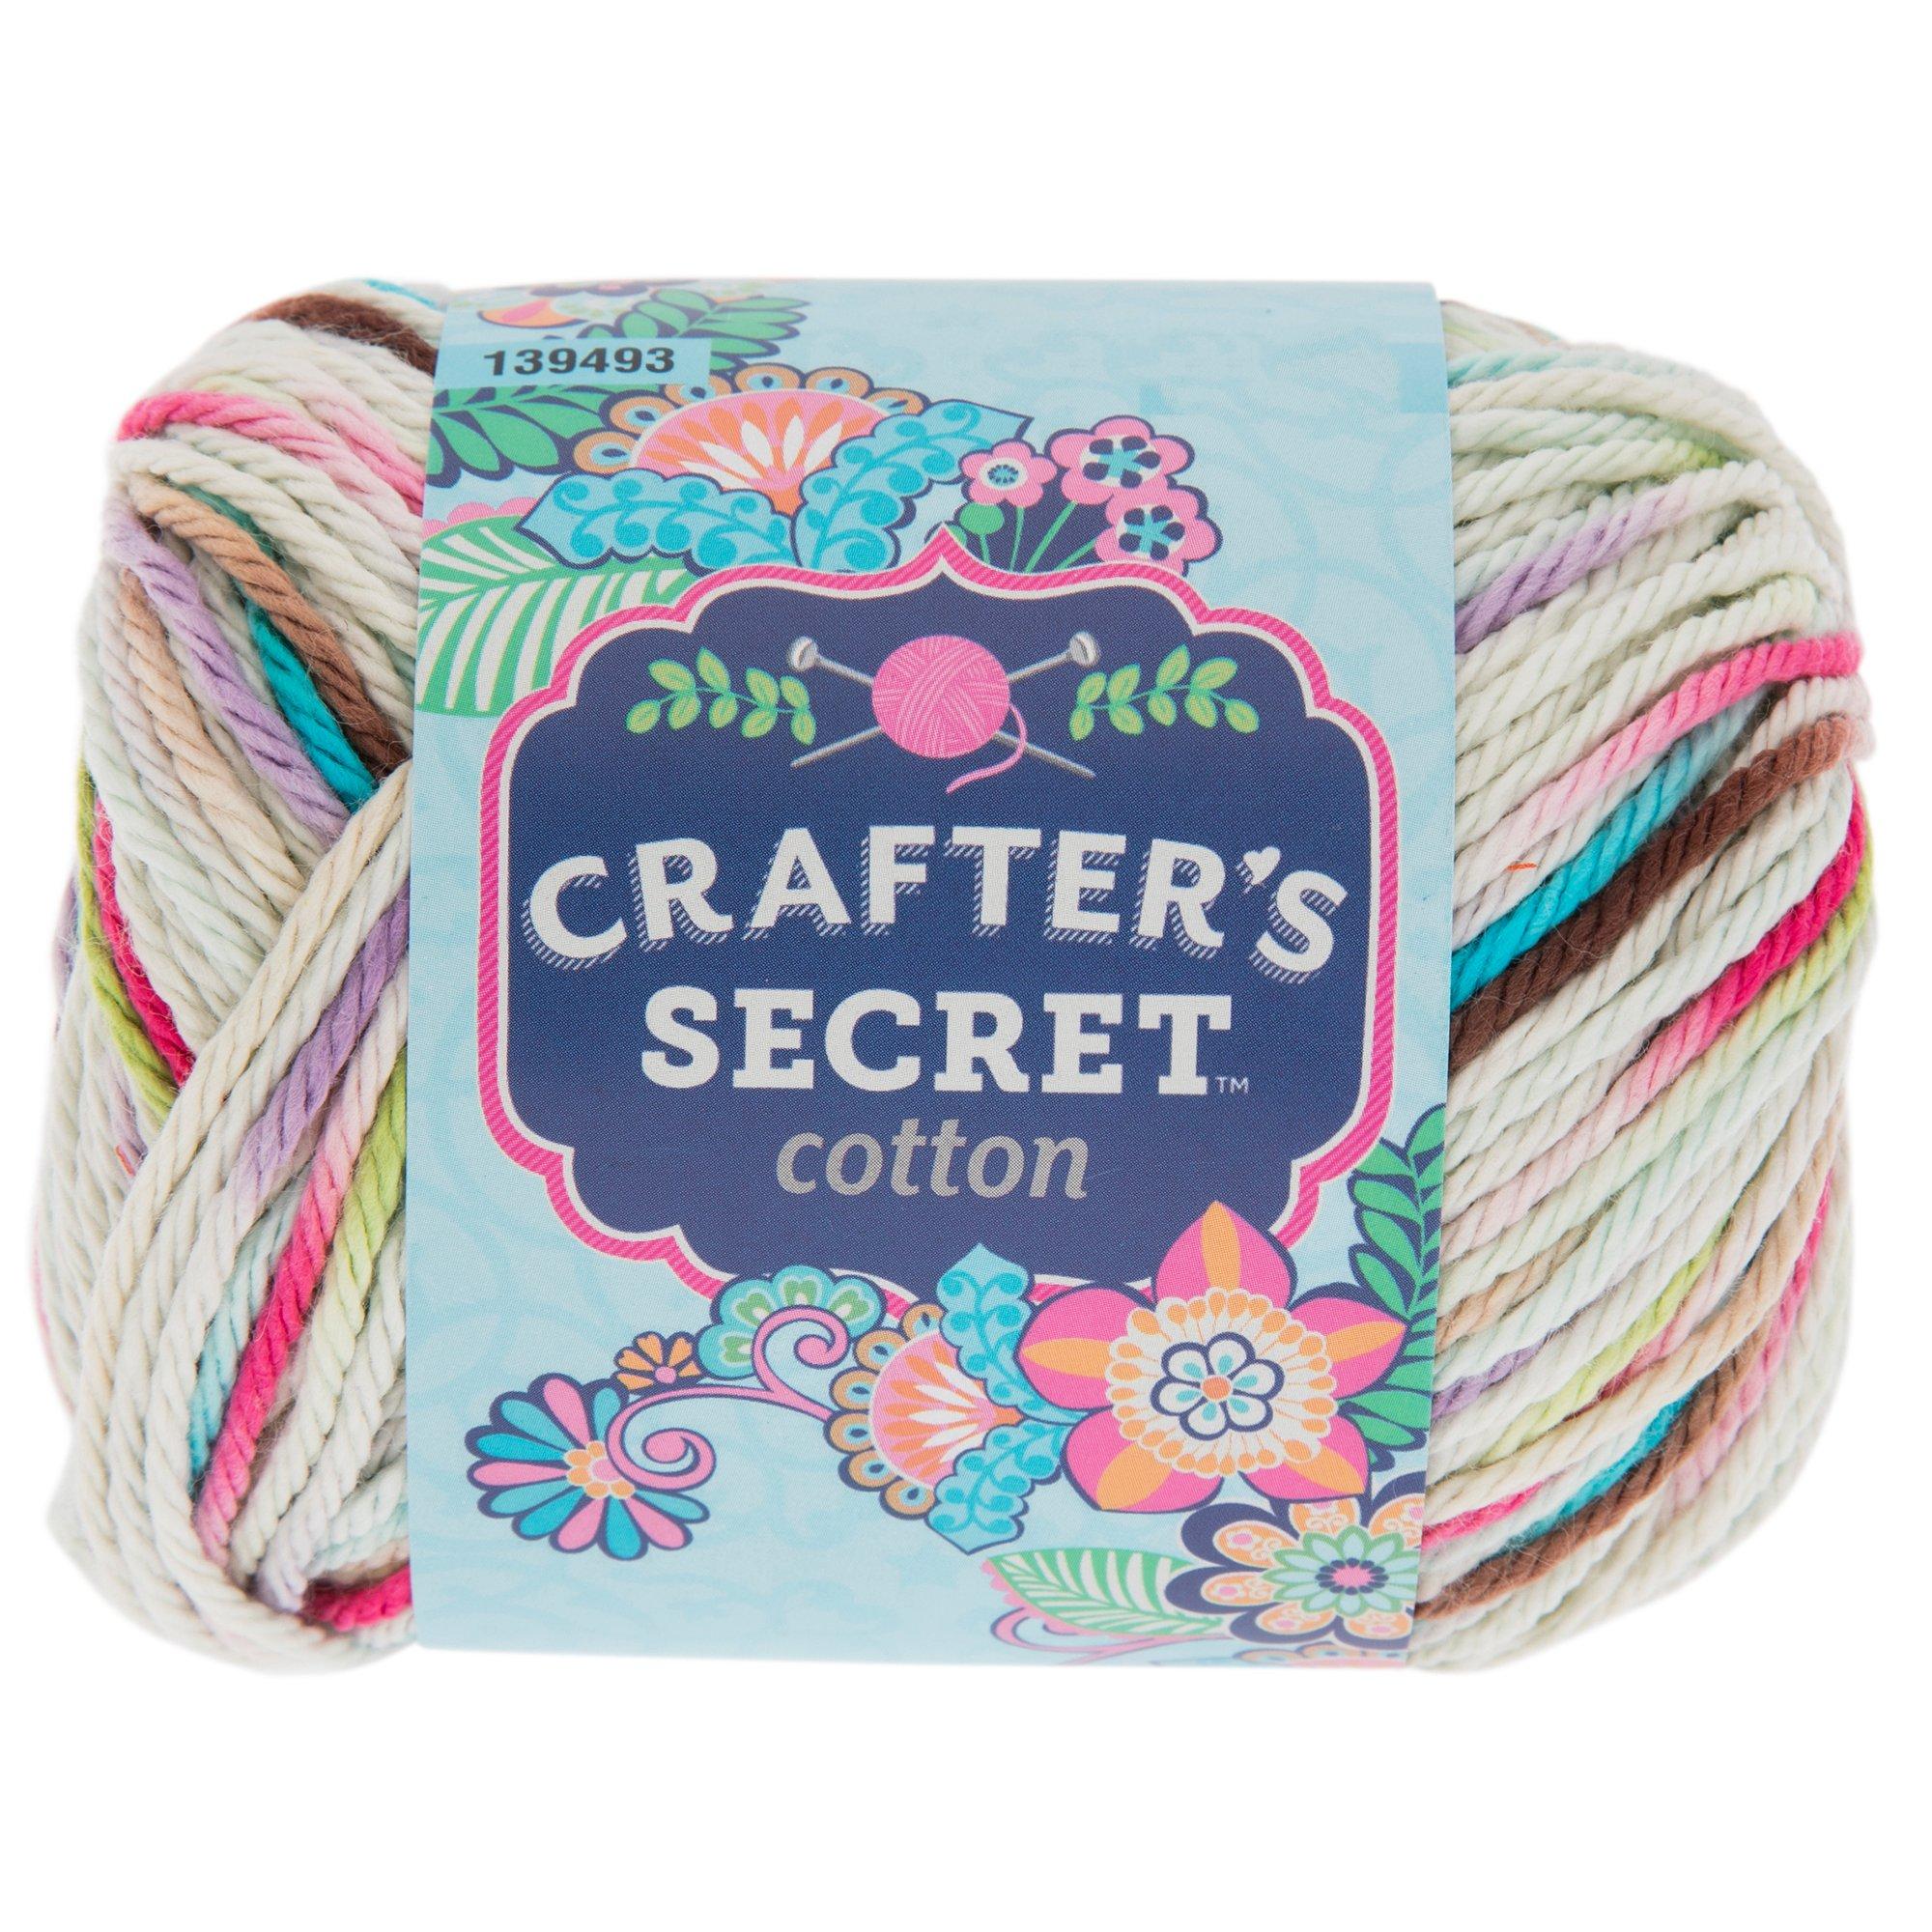 Medium cotton string yarn ball – Economy of Brighton